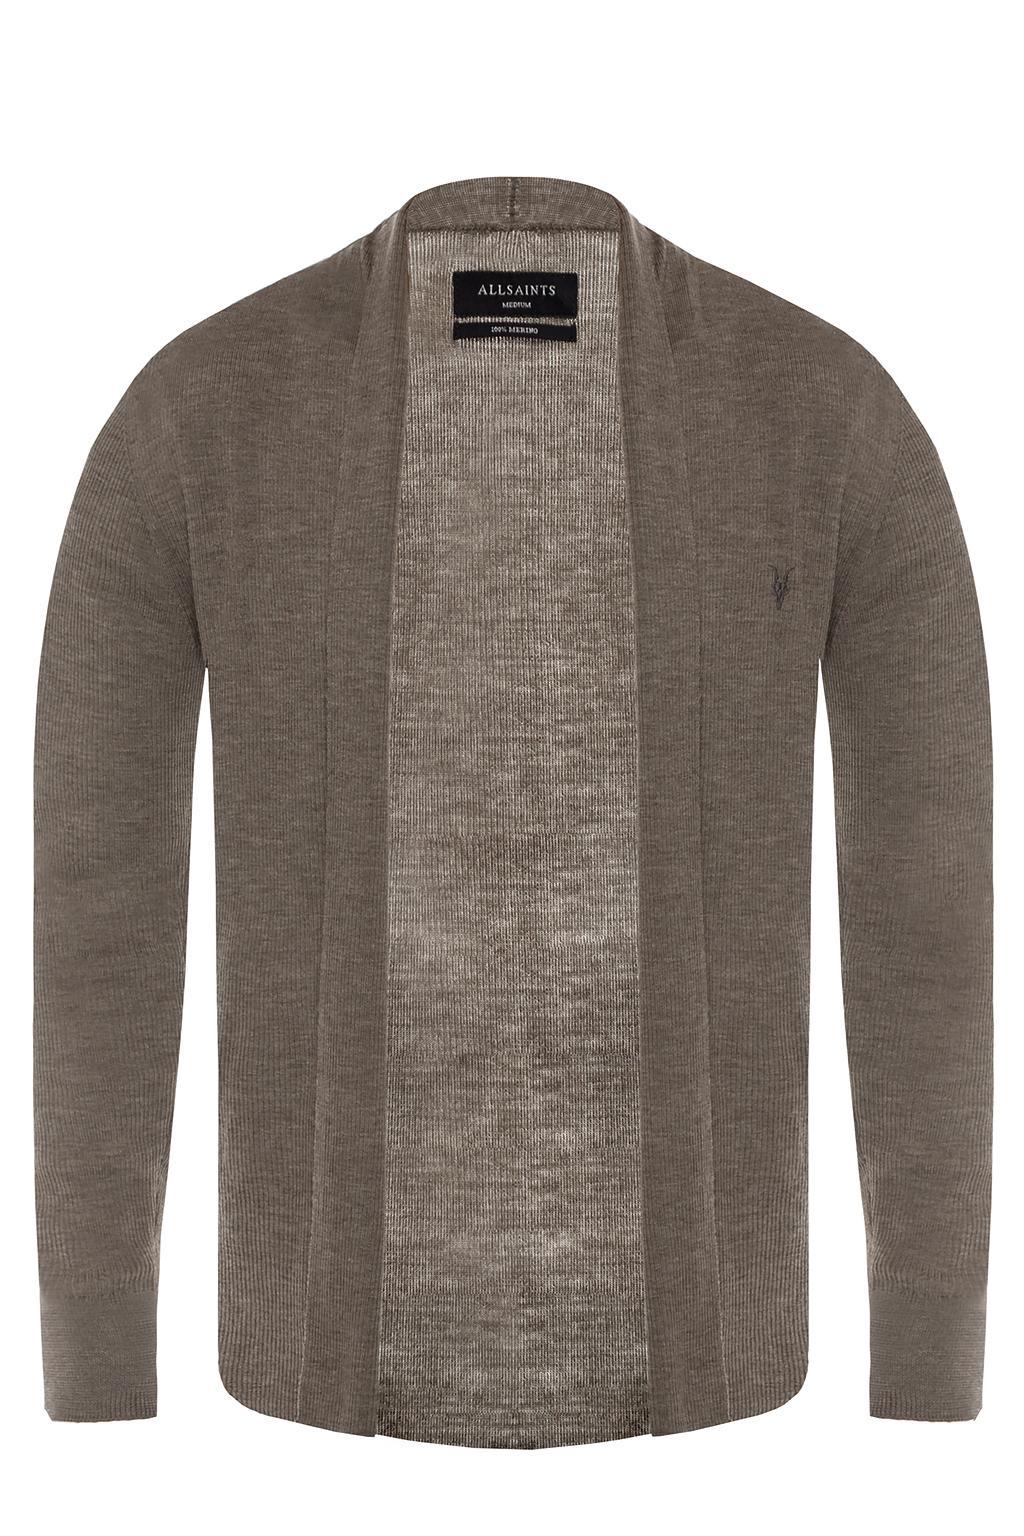 AllSaints Wool 'mode' Cardigan in Grey (Gray) for Men - Lyst